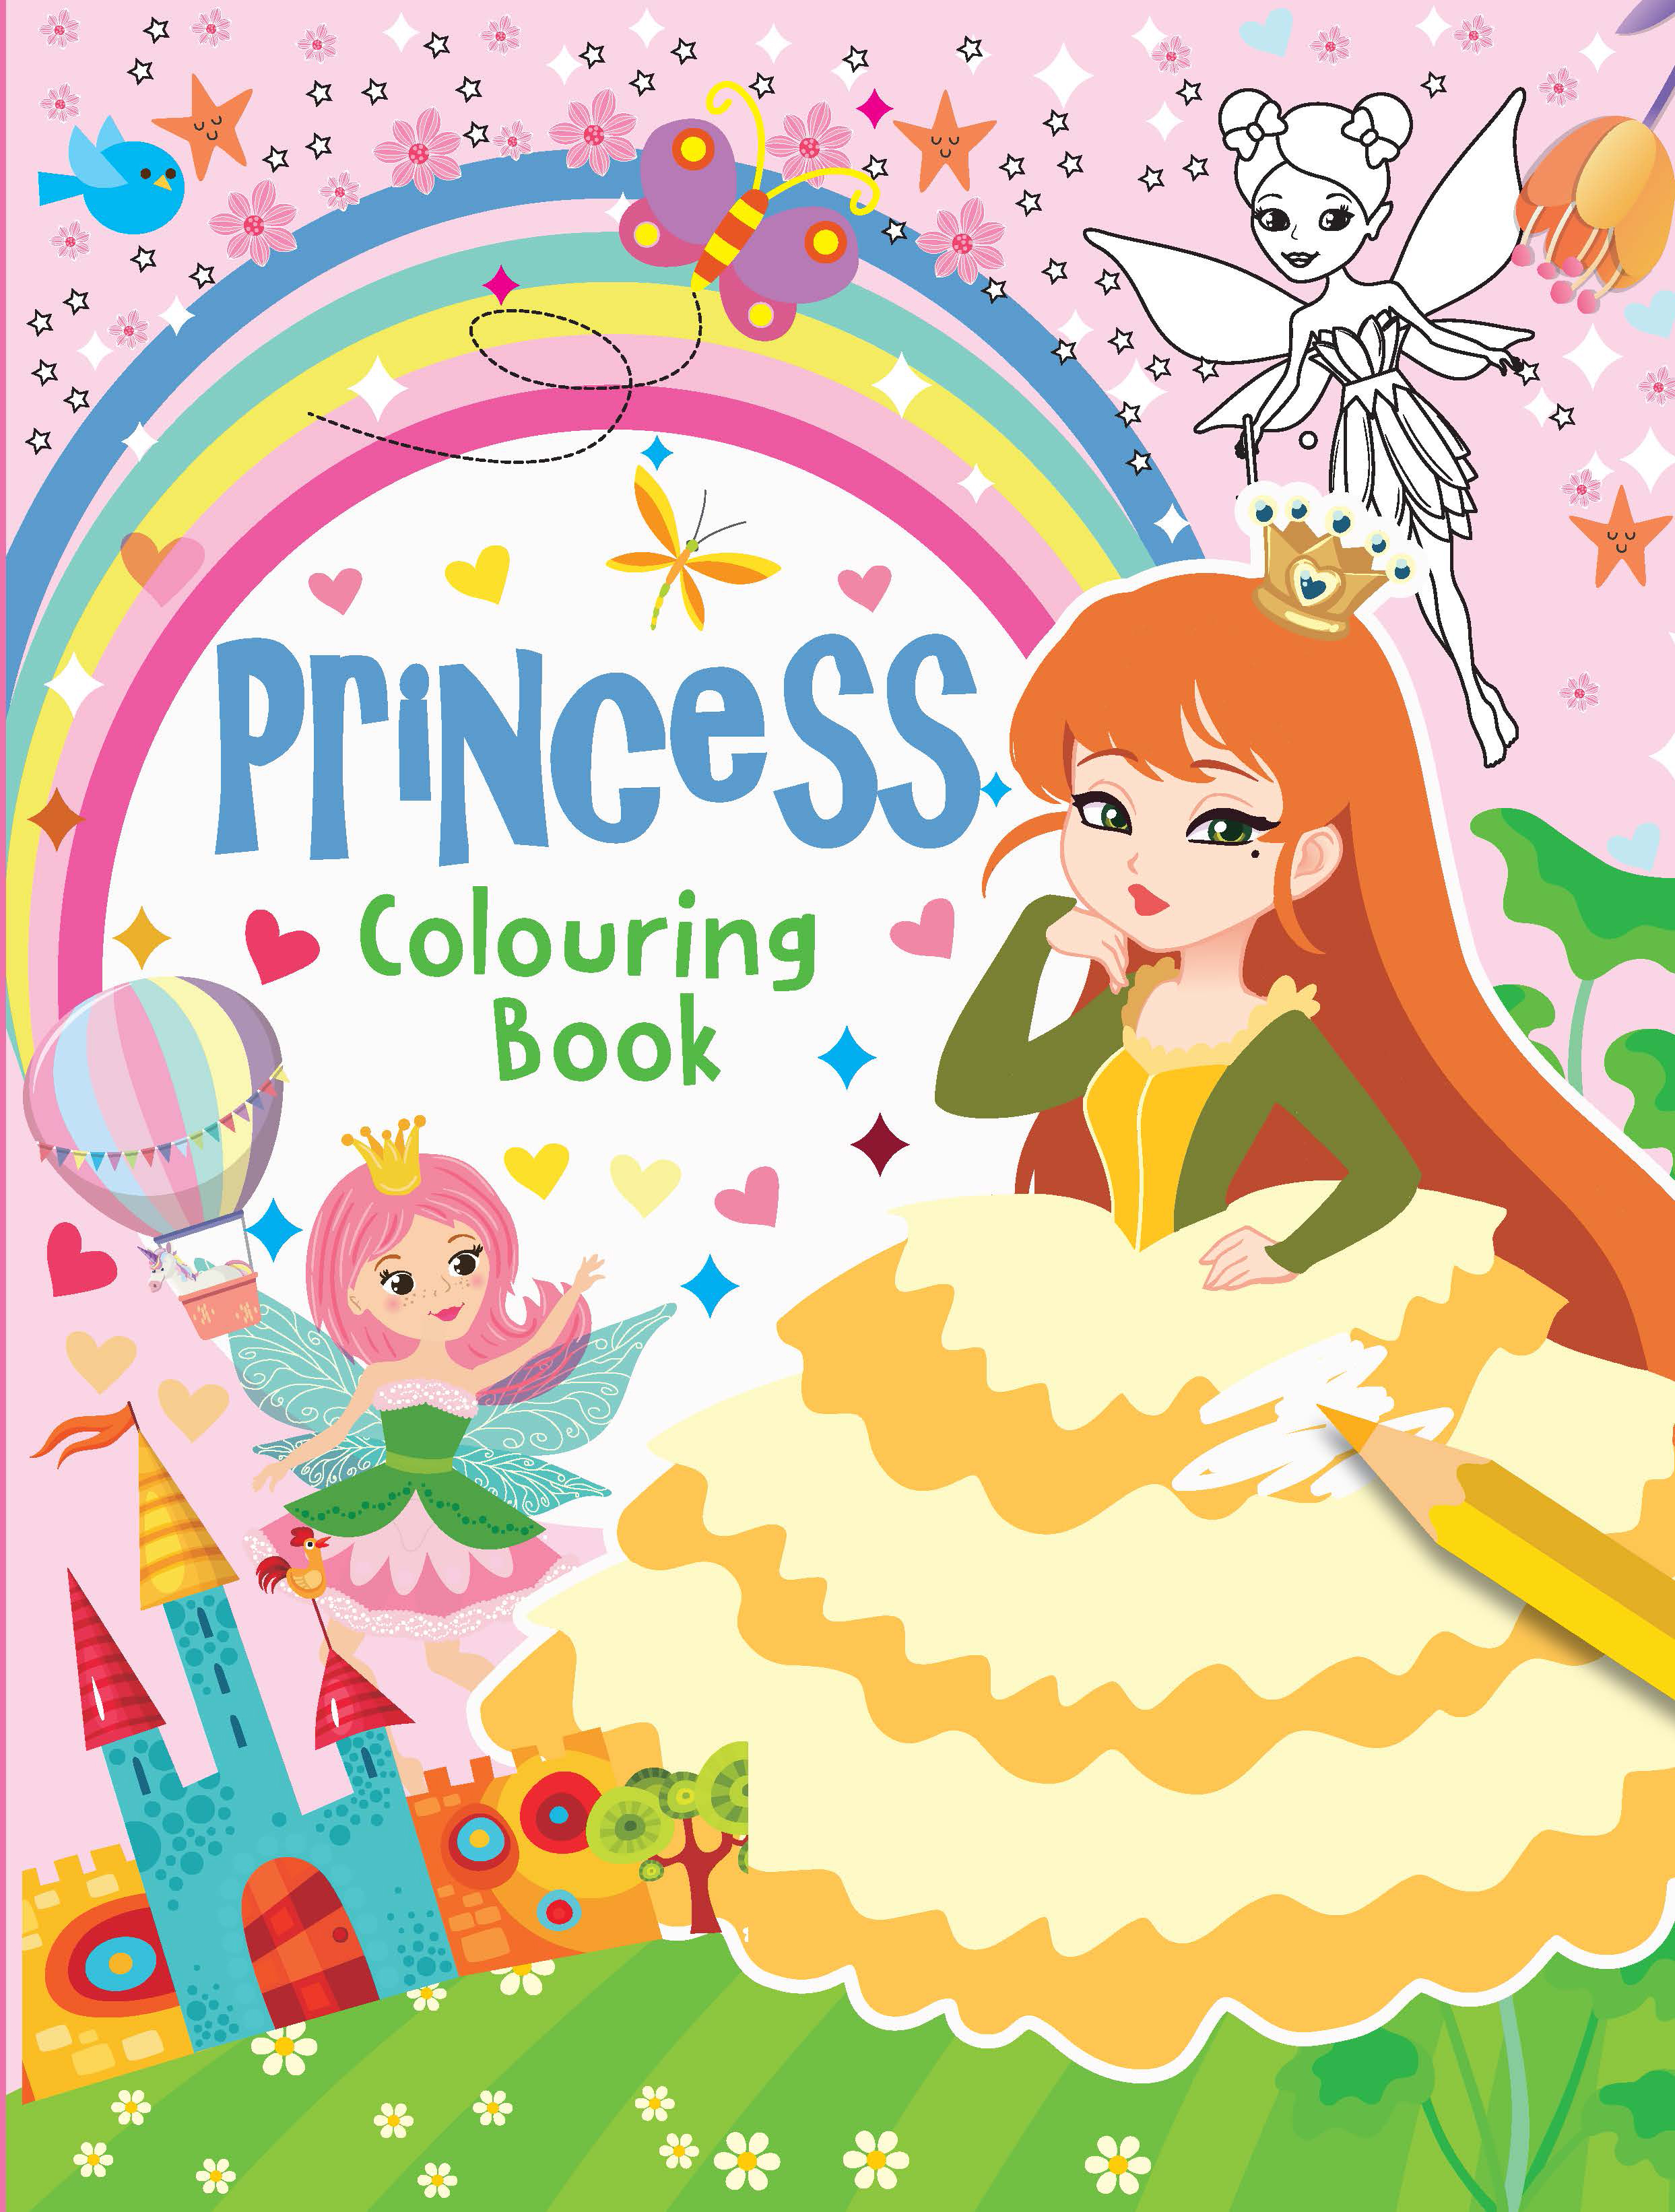 Princess Colouring Book-1